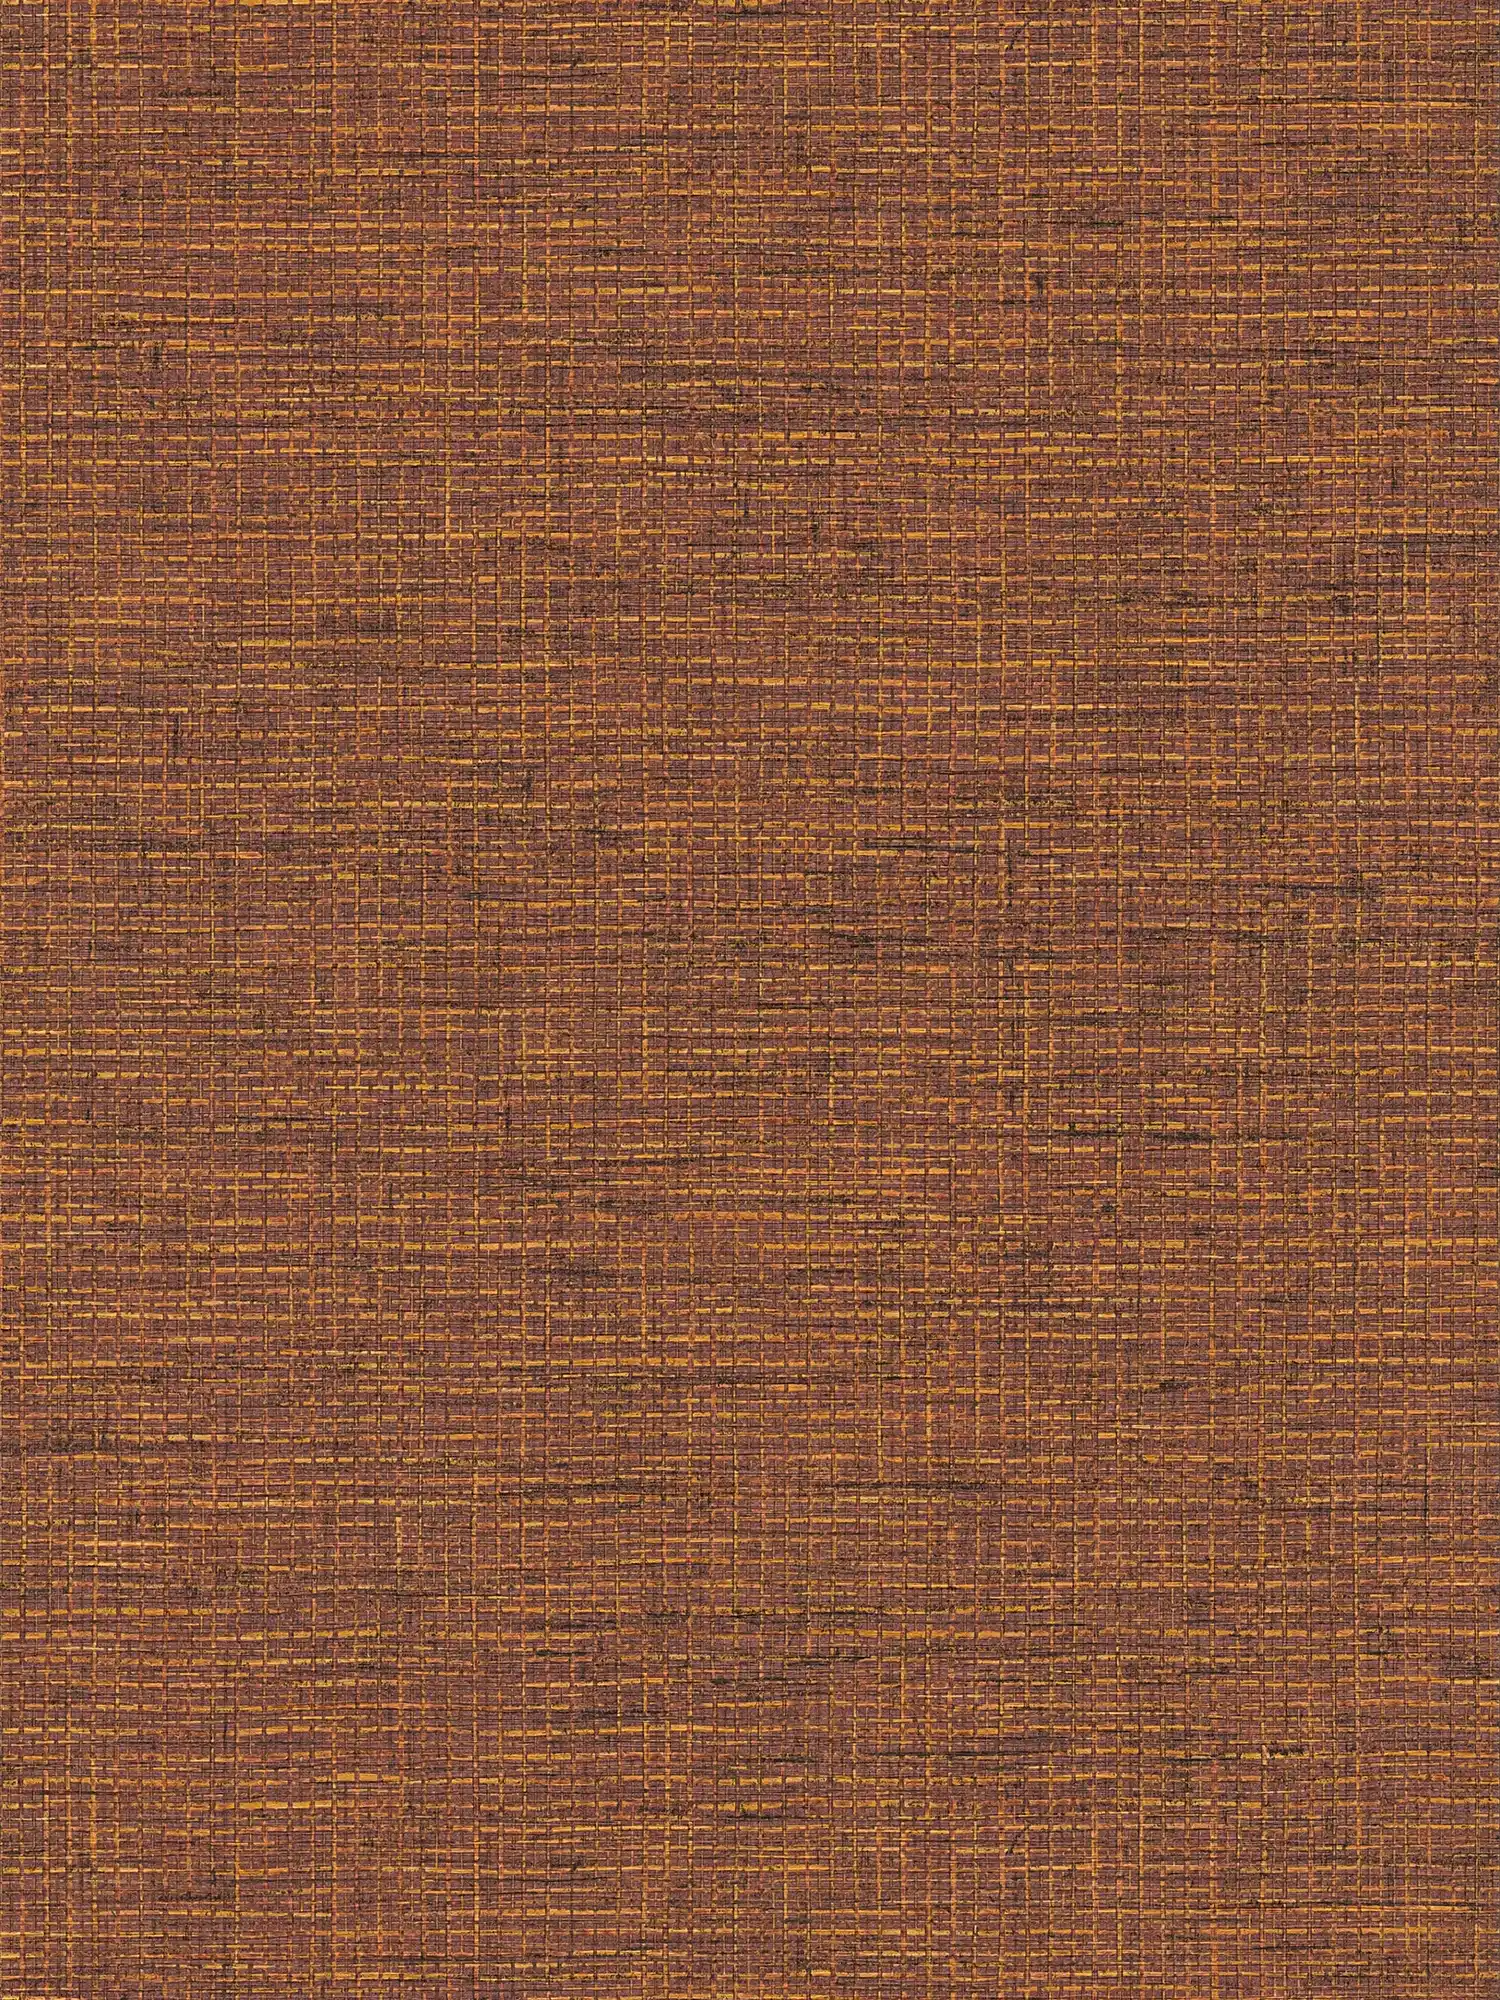 Ethno behang oranje-bruin met raffia look
